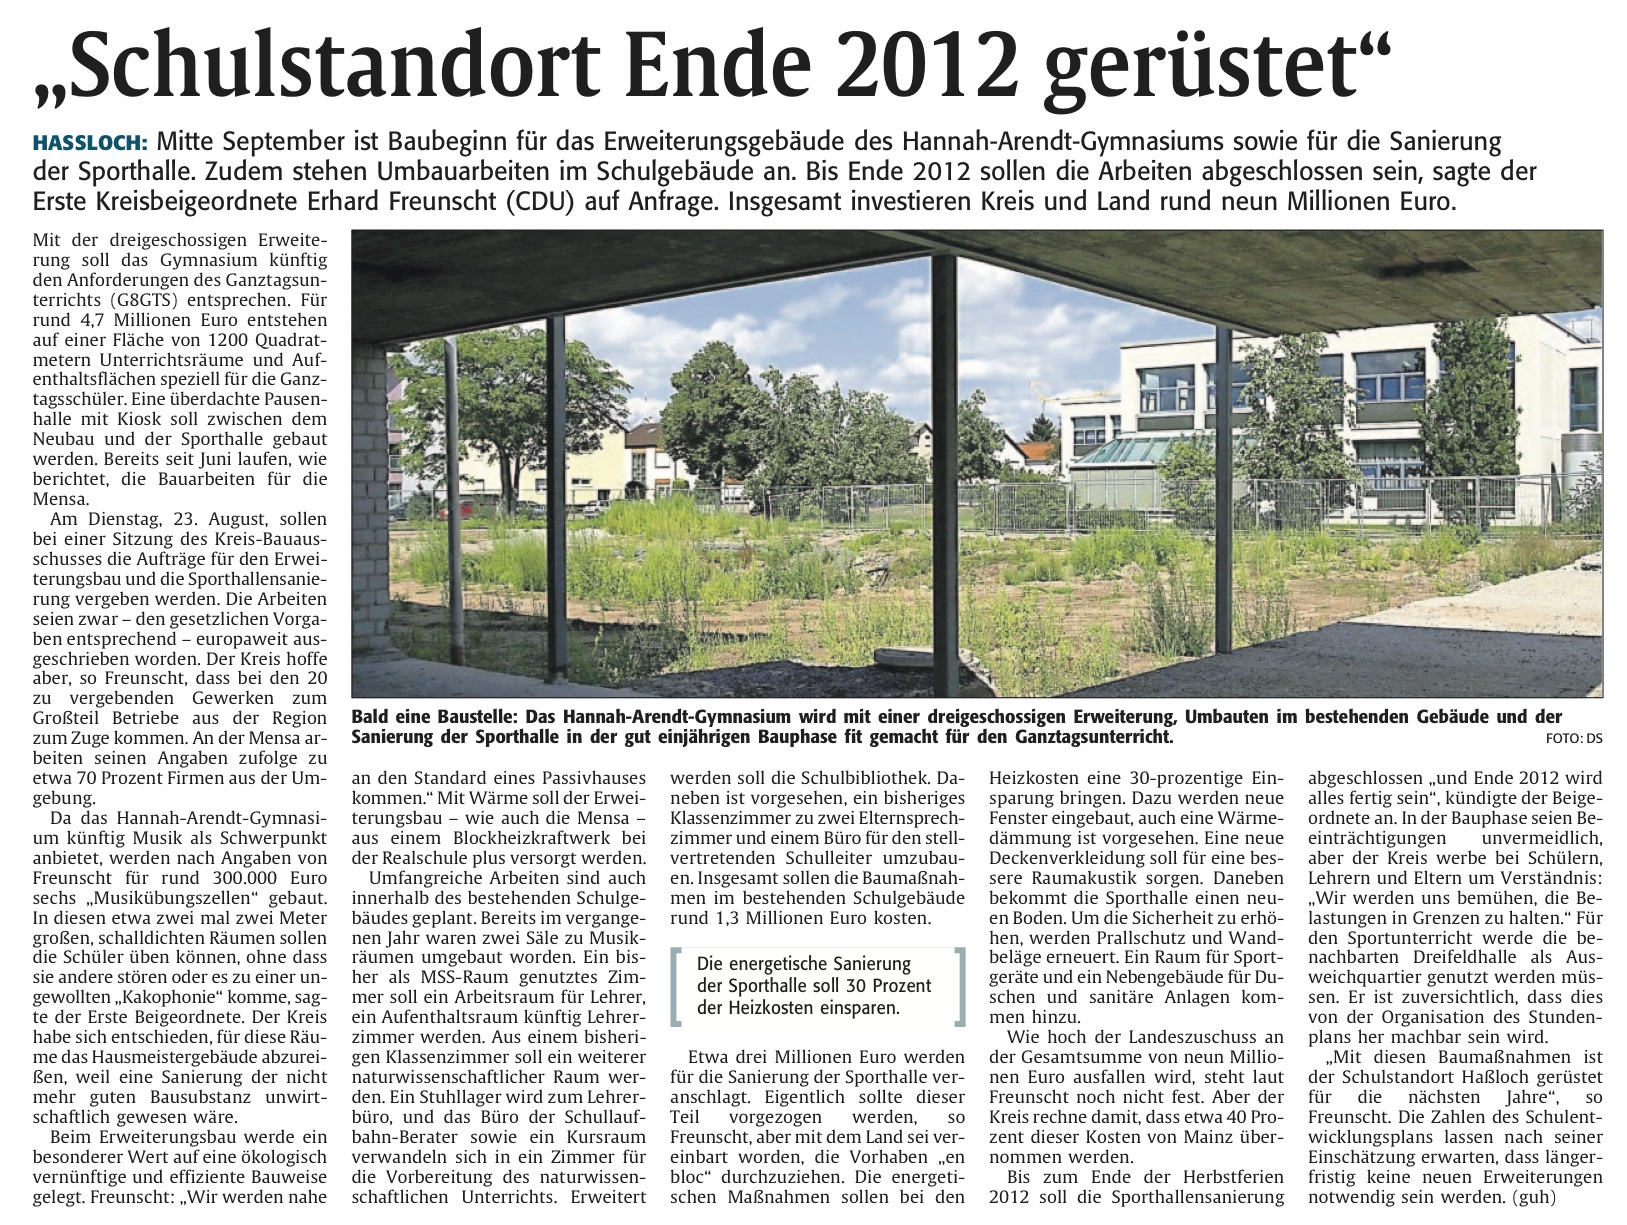 Rheinpfalz am 16.08.2011:  Schulstandort Ende 2012 gerüstet